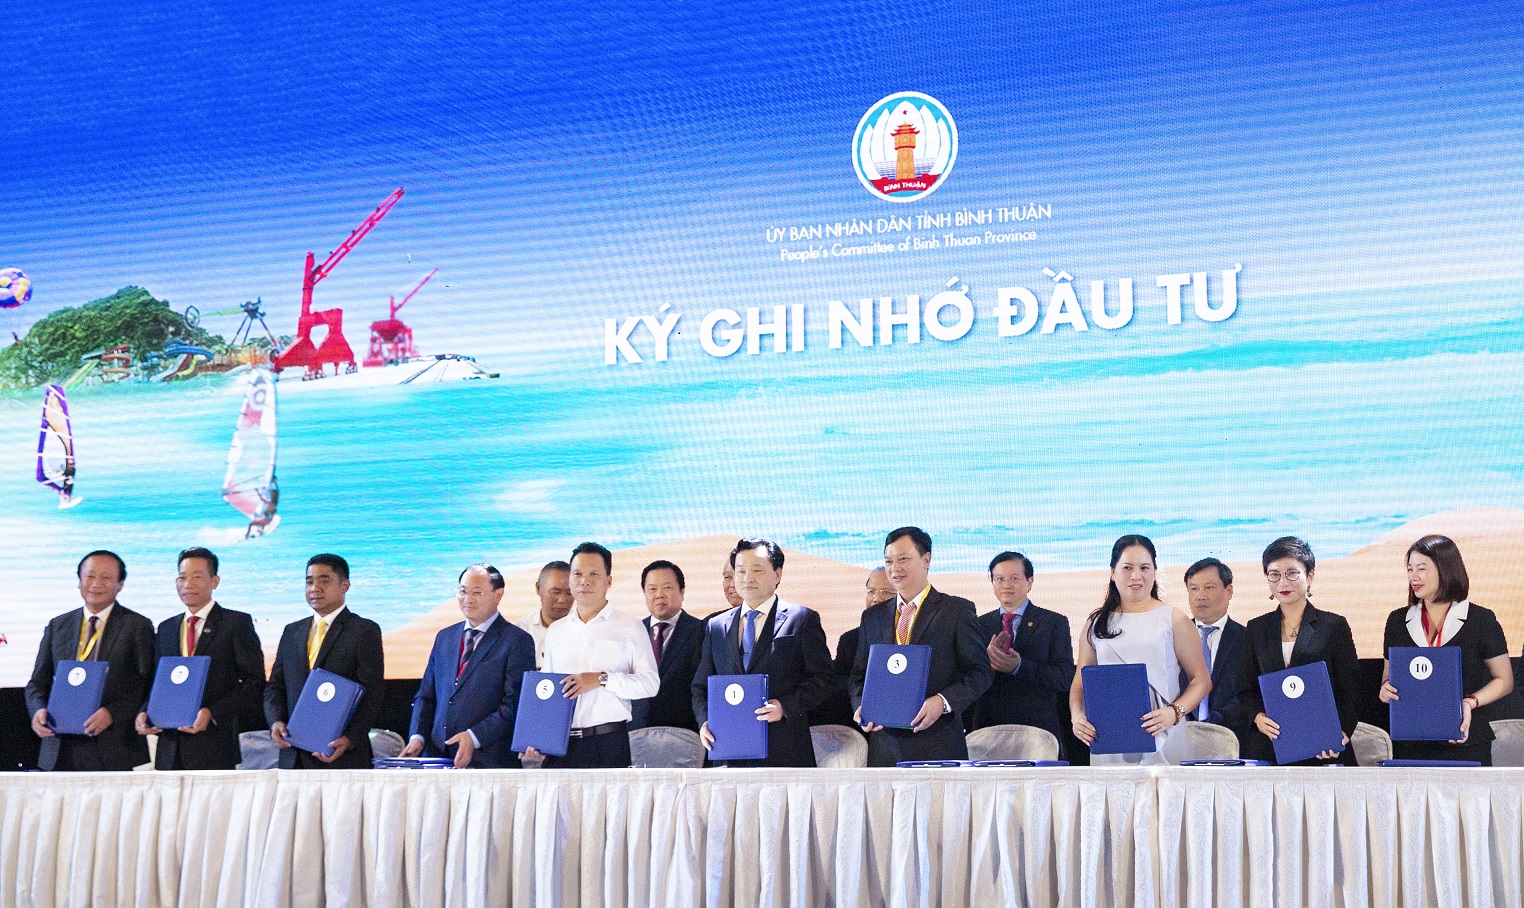 Tập đoàn Hải Phát nhận bản ghi nhớ đầu tư tại Hội nghị xúc tiến đầu tư tỉnh Bình Thuận